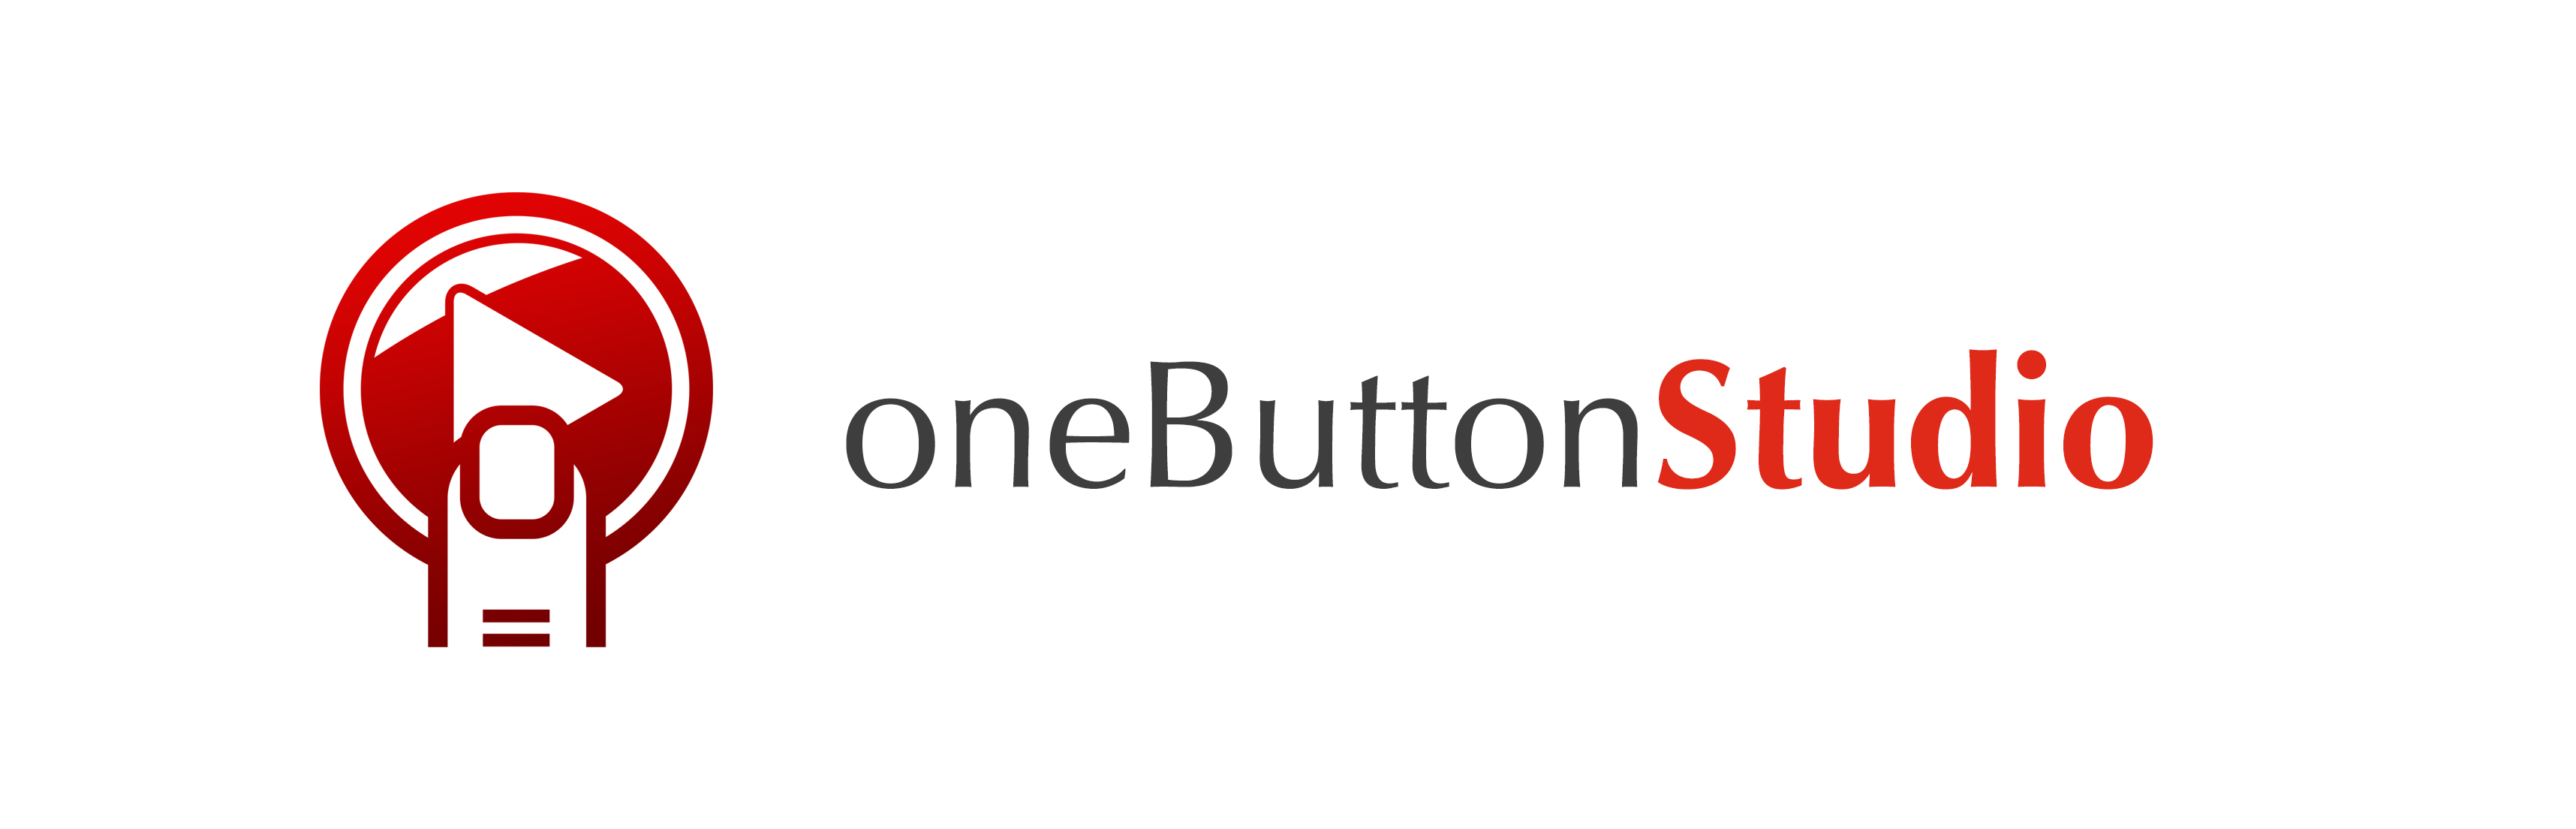 One Button Studio Graphic